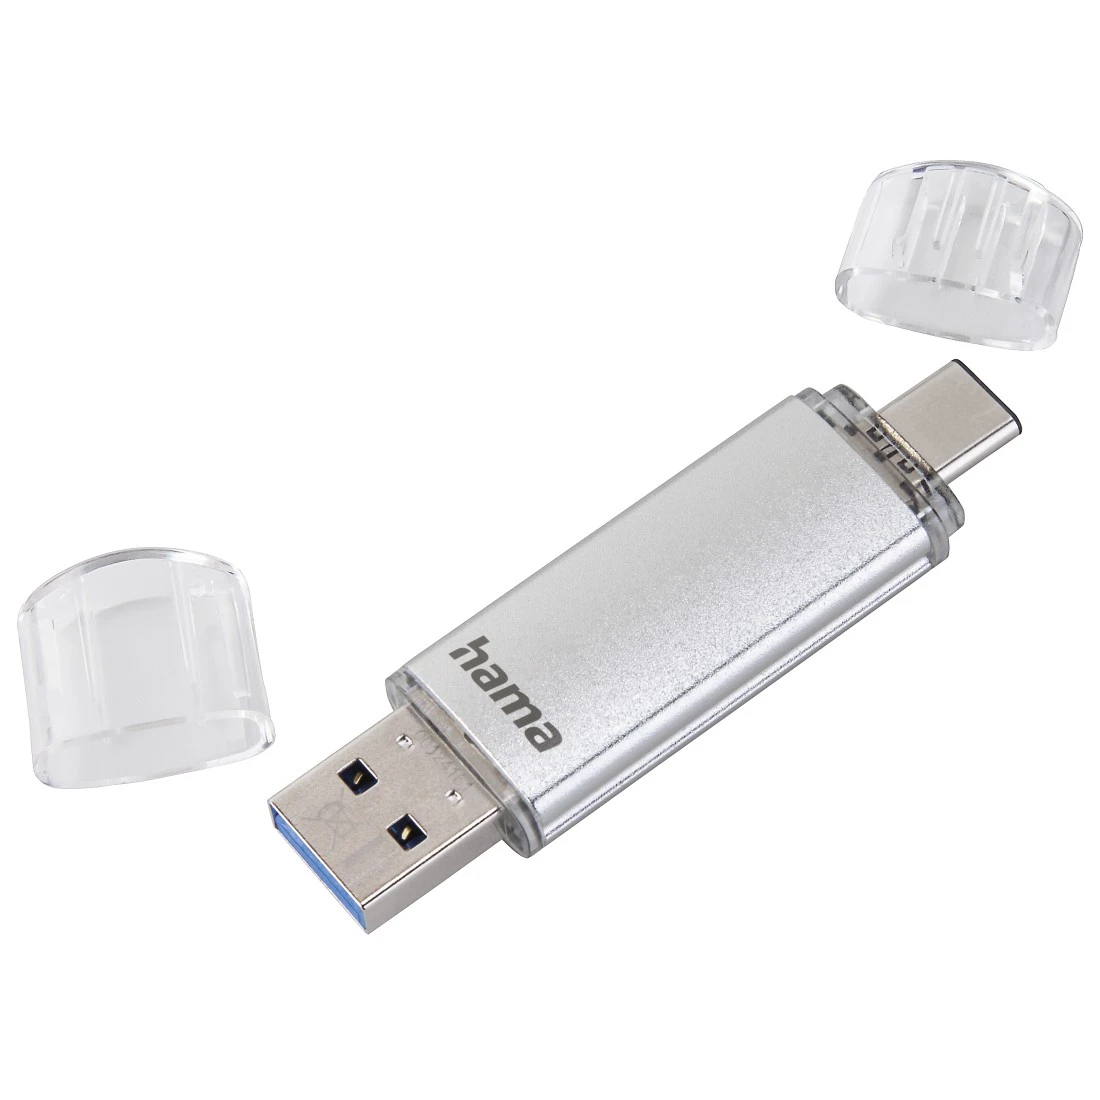 Clé USB C-Laeta, USB-C USB 3.1 / USB 3.0, 256 Go, 70 Mo / s, argentée